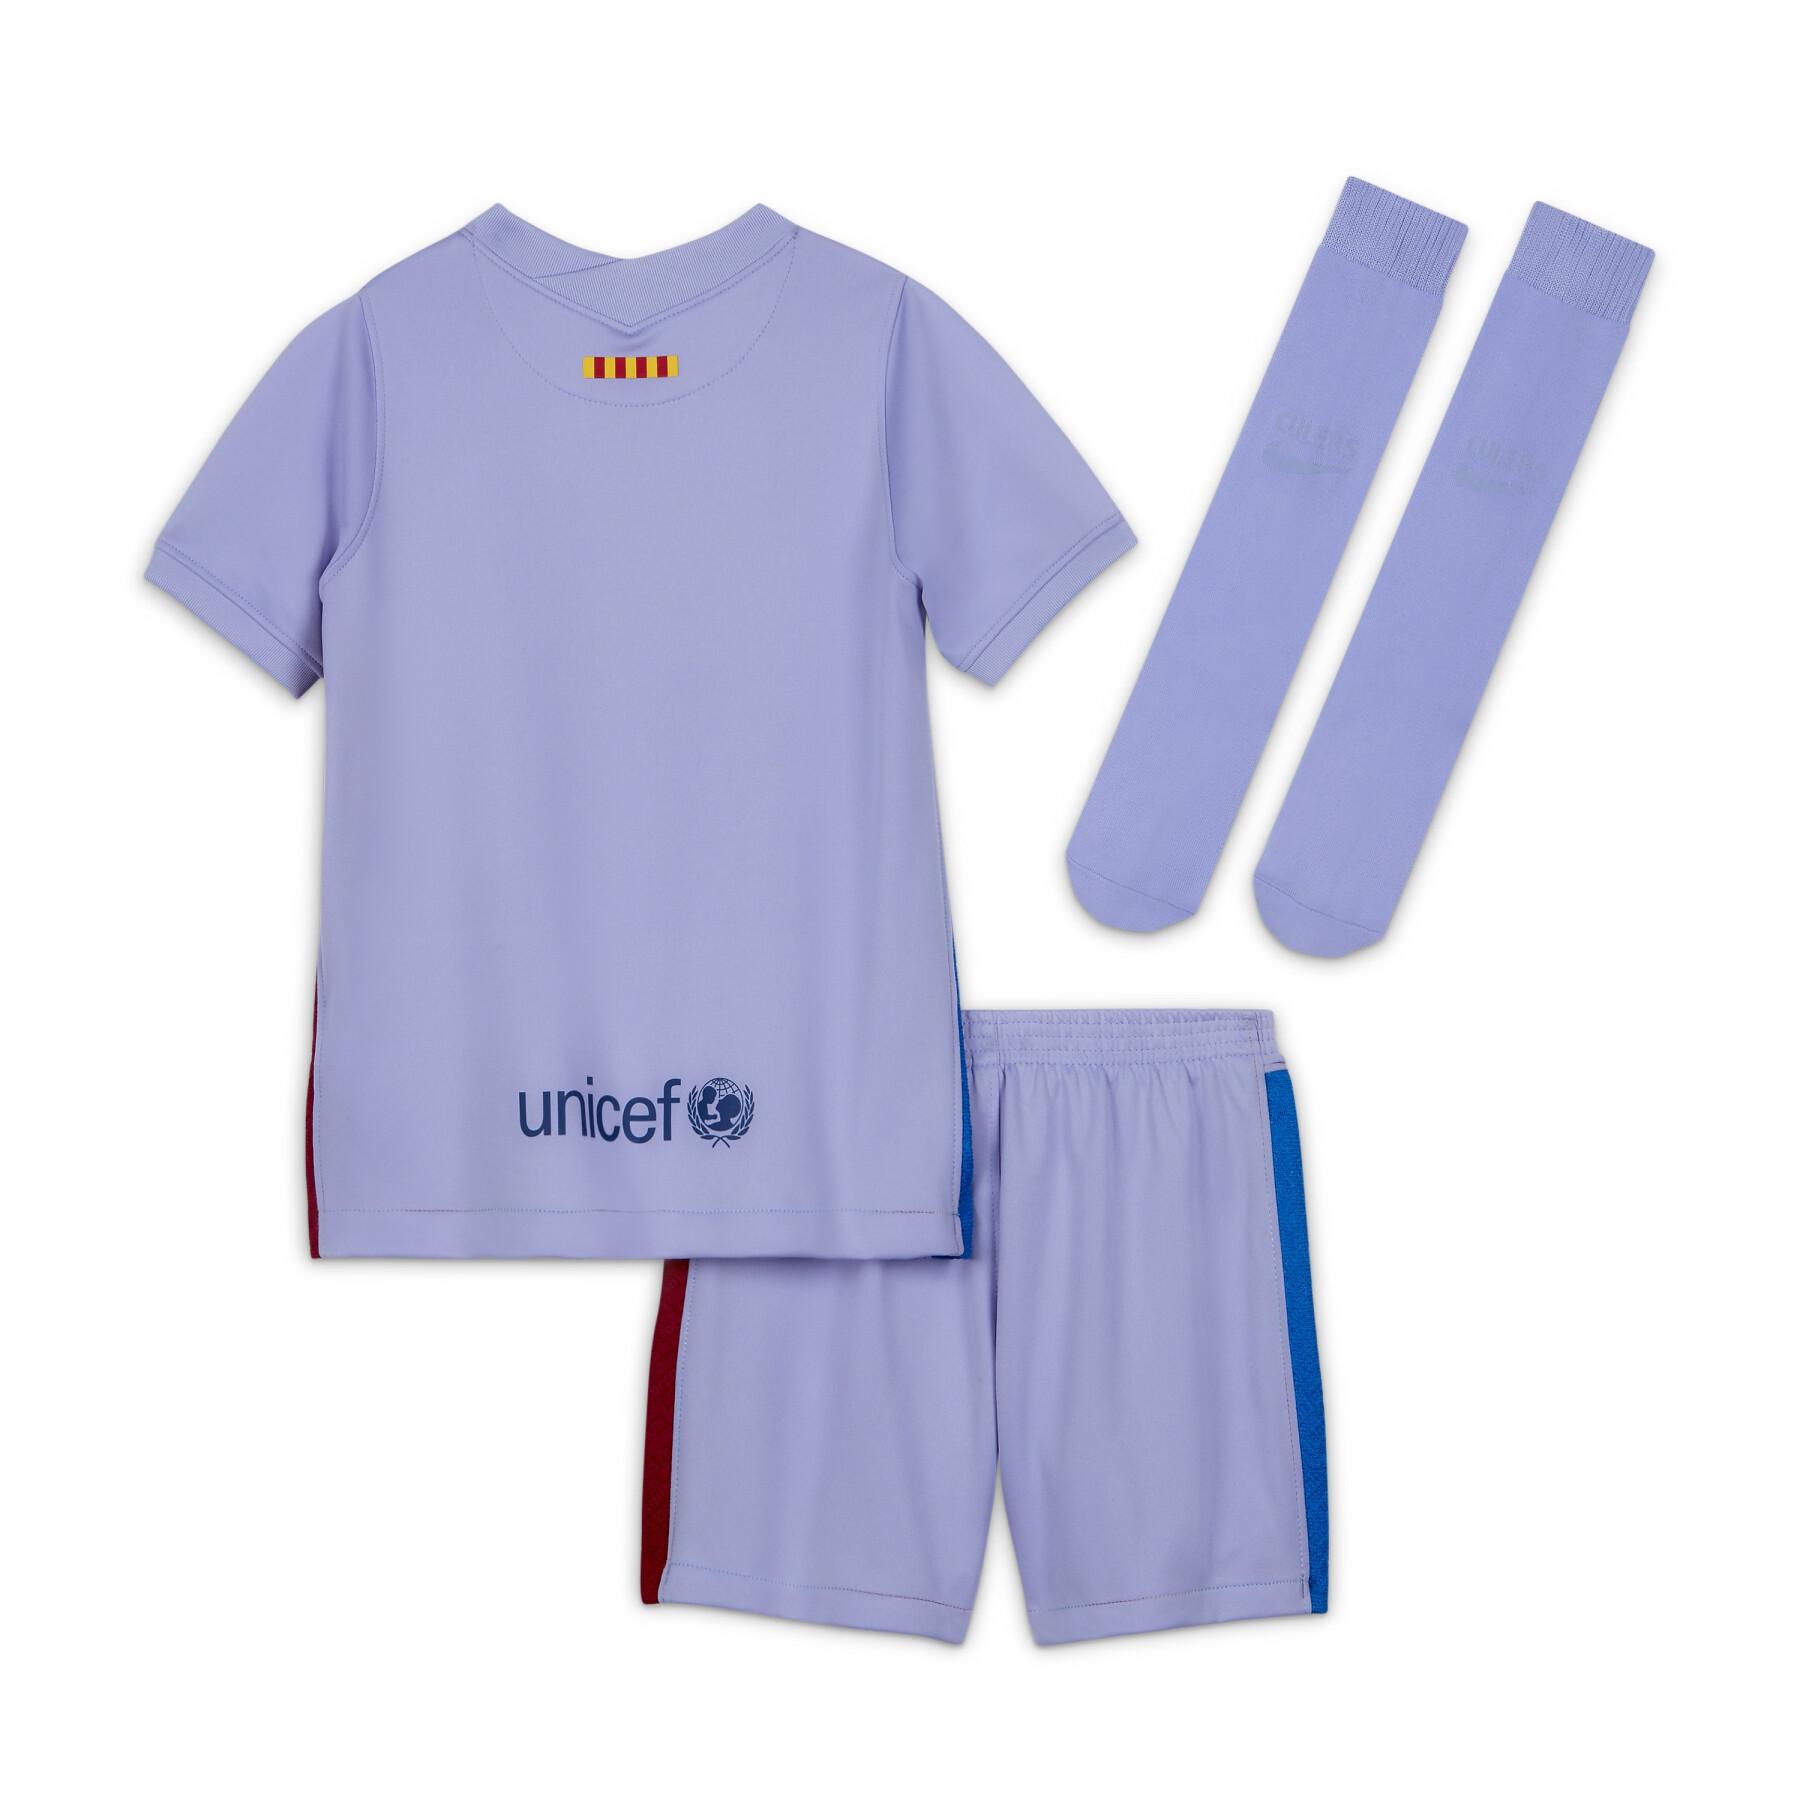 Mini-kit para crianças ao ar livre FC Barcelone 2021/22